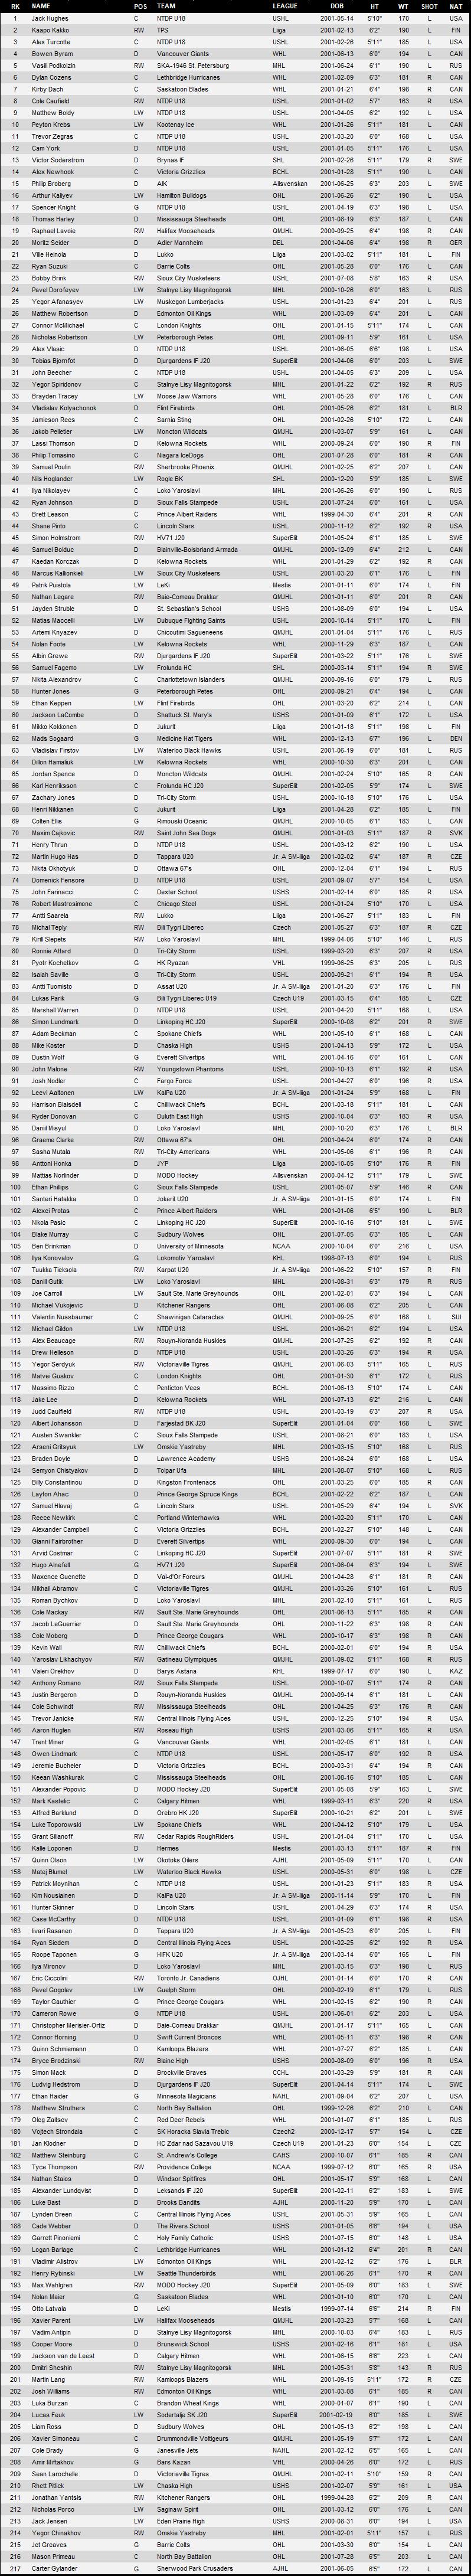 2019 DraftPro Final Rankings